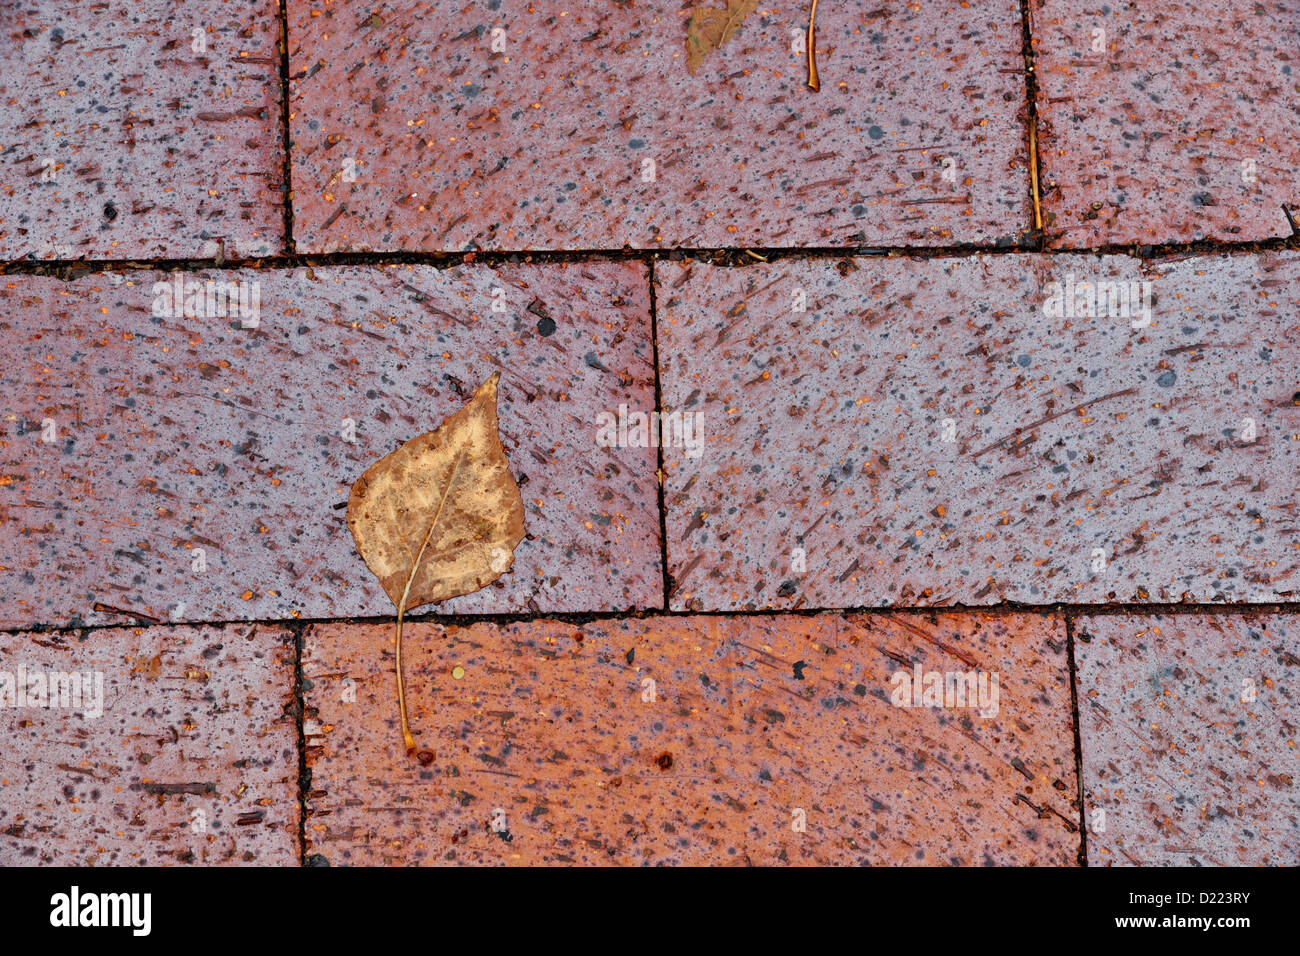 Ziegel-Pflastersteine im Bürgersteig in der Innenstadt von Santa Fe mit  gefallenen Pappel Blätter, Santa Fe, New Mexico, USA Stockfotografie - Alamy